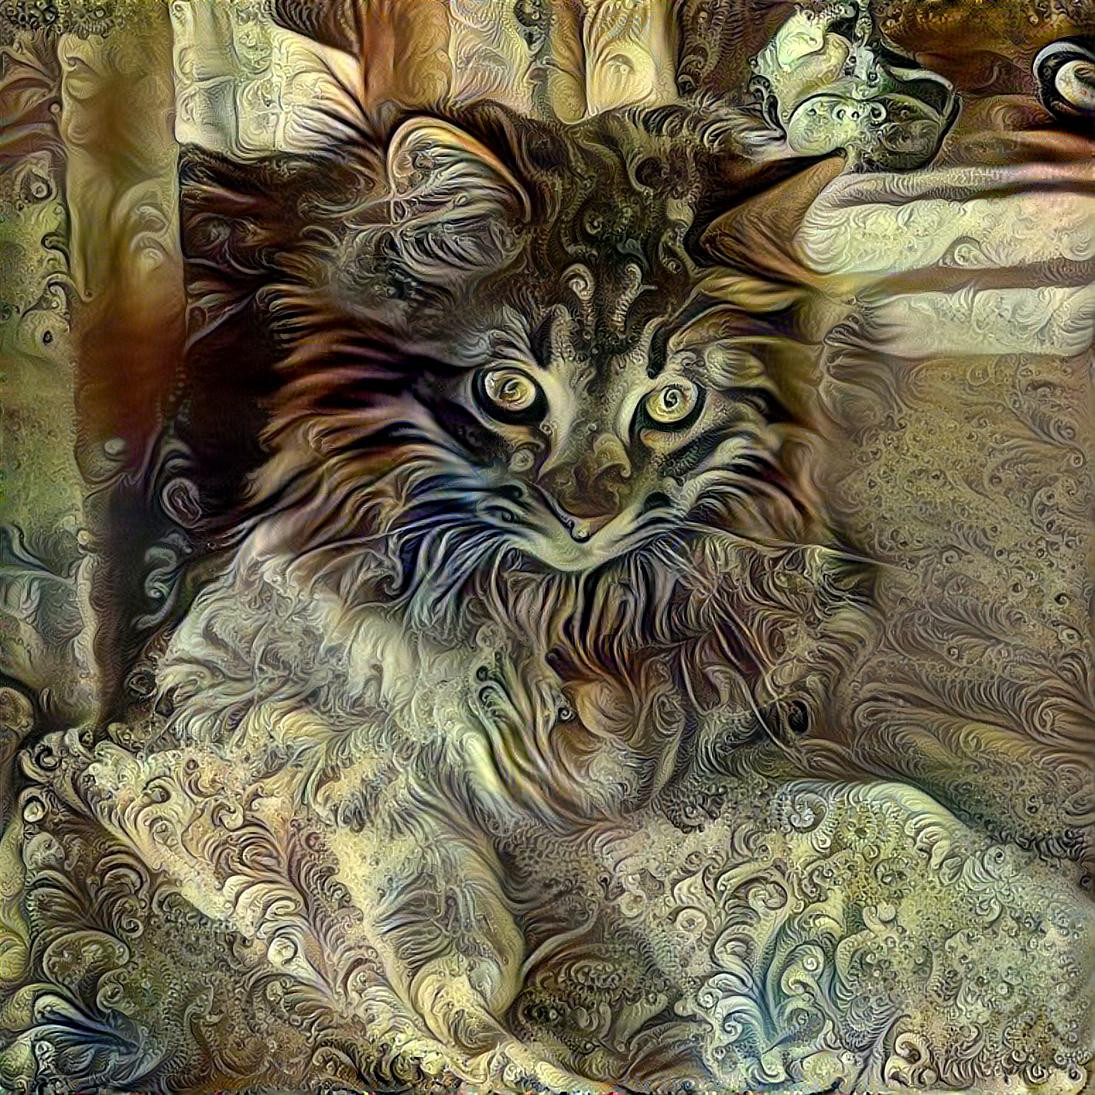 Titus the Kitten [1.2MP]